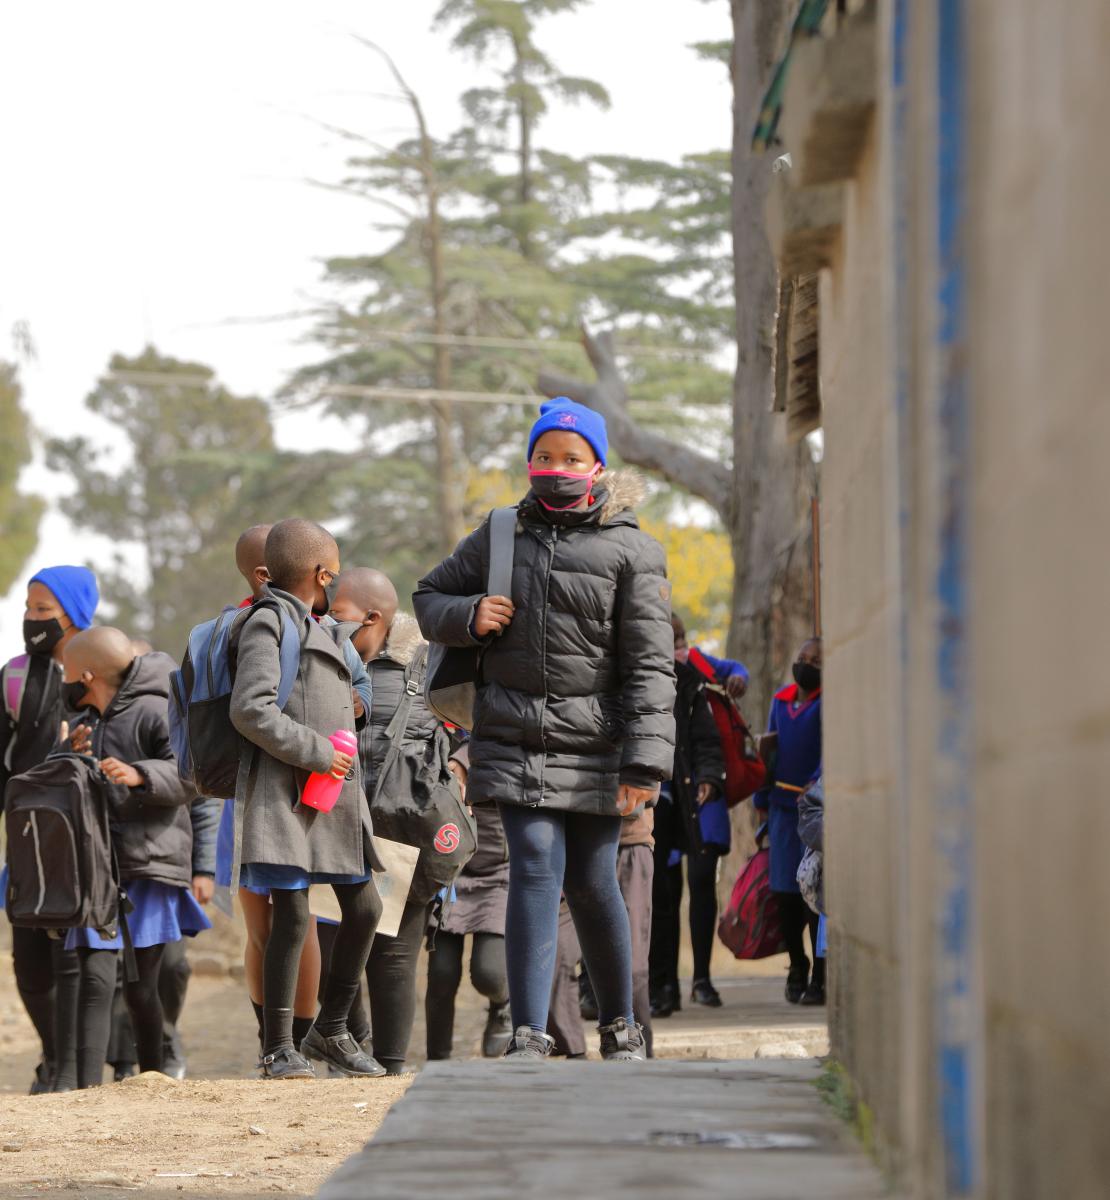 Un grupo de niños y niñas en edad escolar, con mascarillas, sale de su escuela.